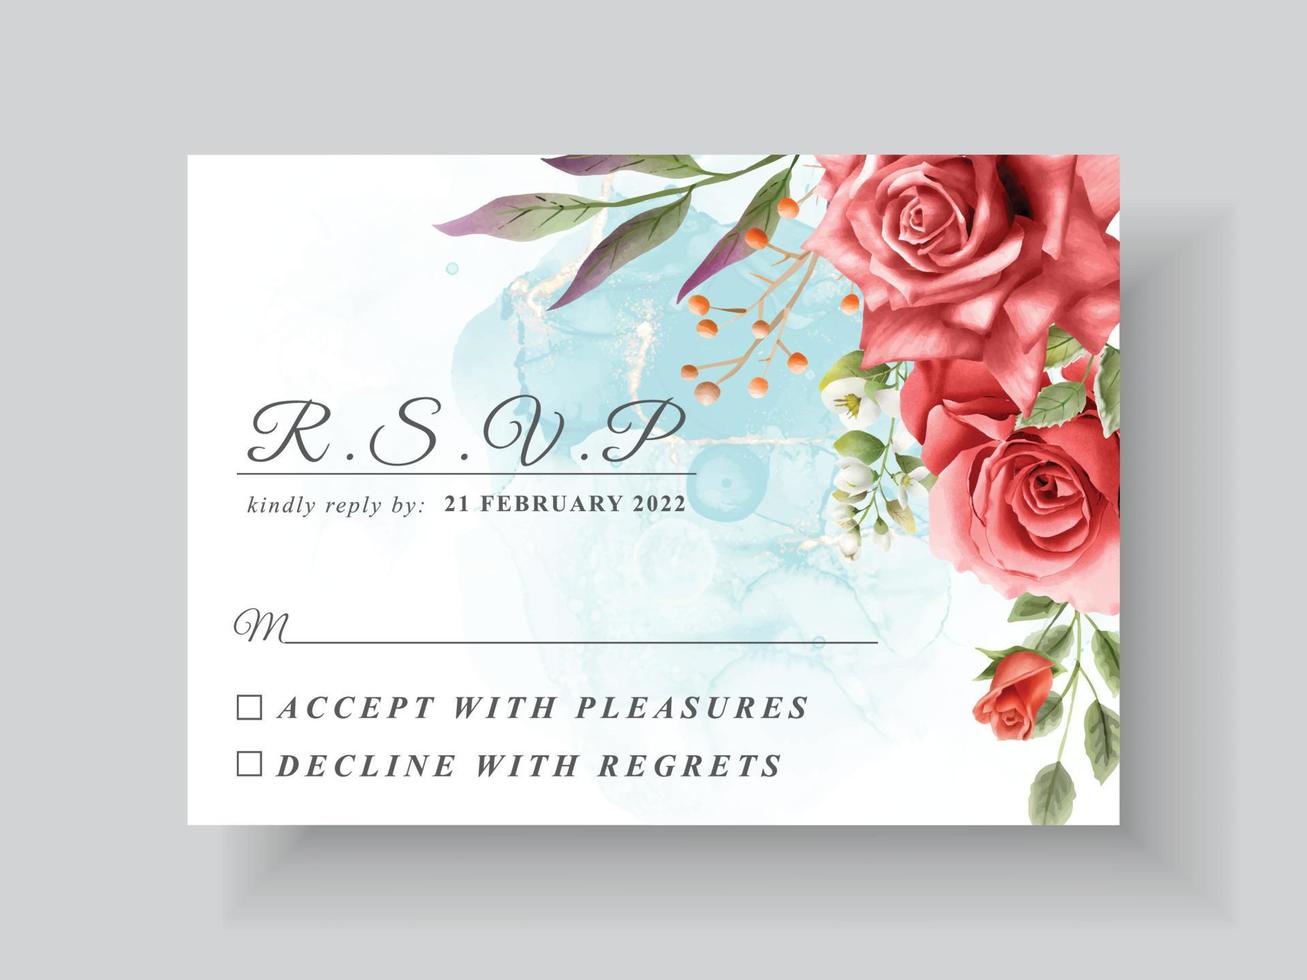 modelo de cartão de convite de casamento floral lindo e romântico vetor